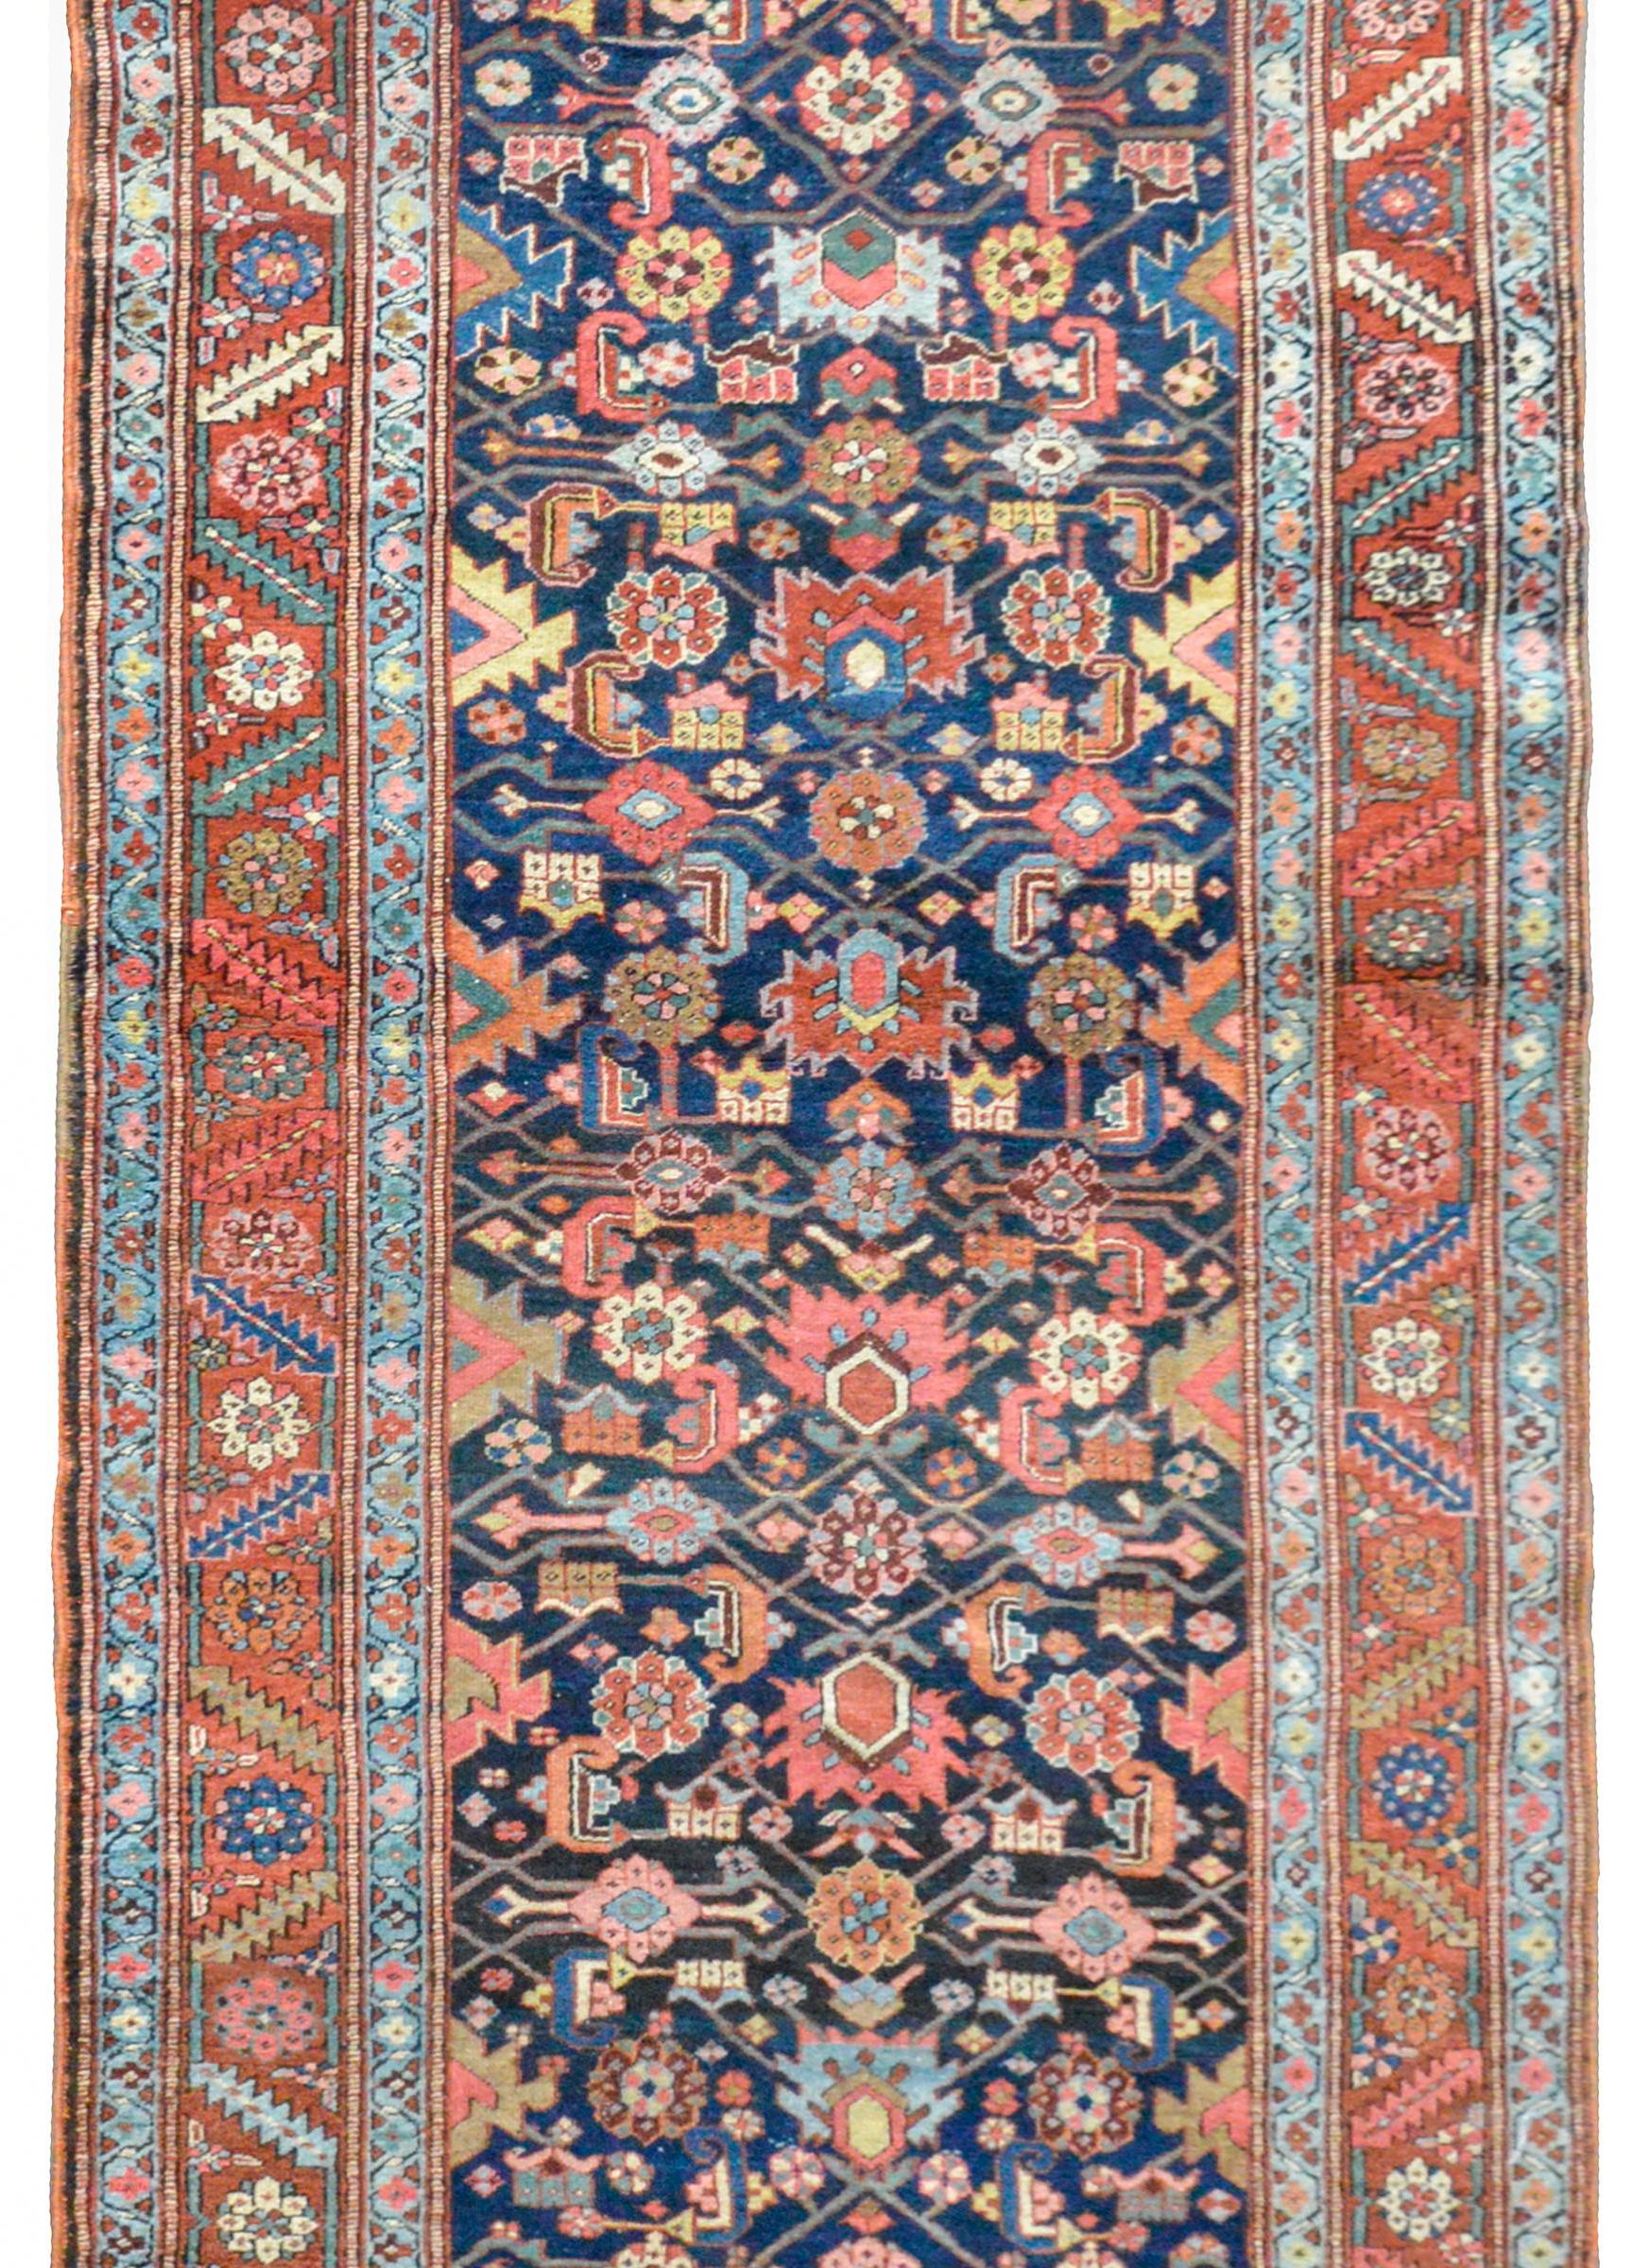 Exceptionnel tapis persan Heriz du début du XXe siècle, présentant un audacieux motif floral stylisé en treillis, tissé en indigo clair, cramoisi, corail, or et cramoisi, le tout sur un fond indigo foncé. La bordure est exceptionnelle avec un motif